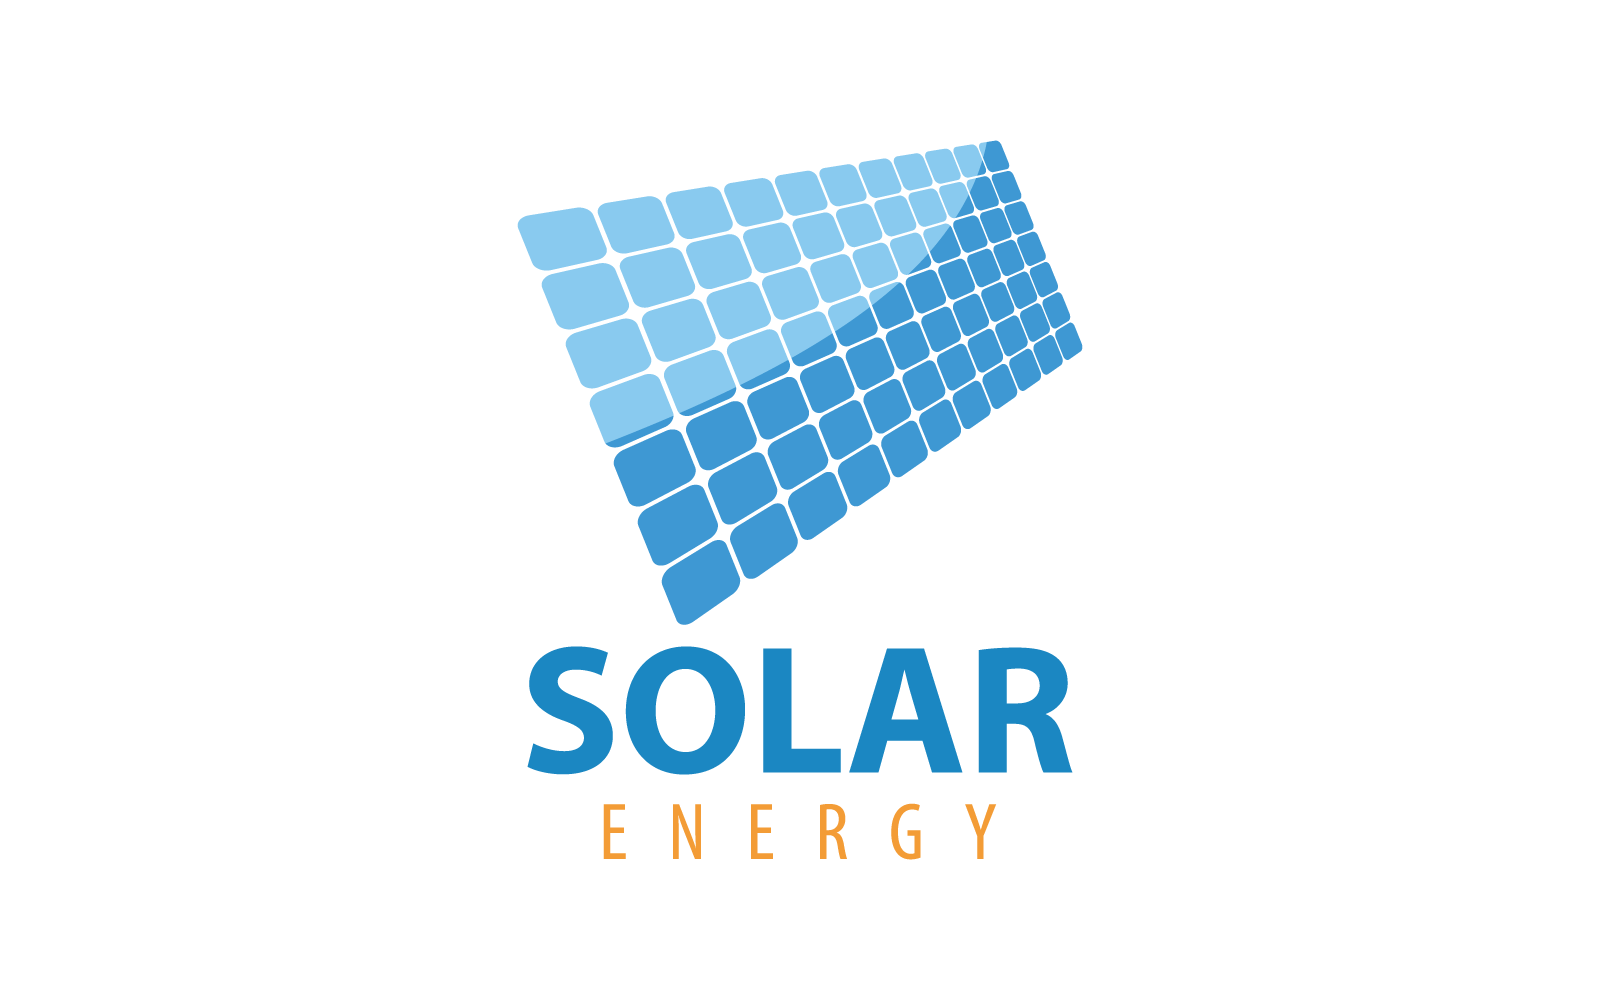 Diseño plano del vector del icono de la ilustración del logotipo del panel solar